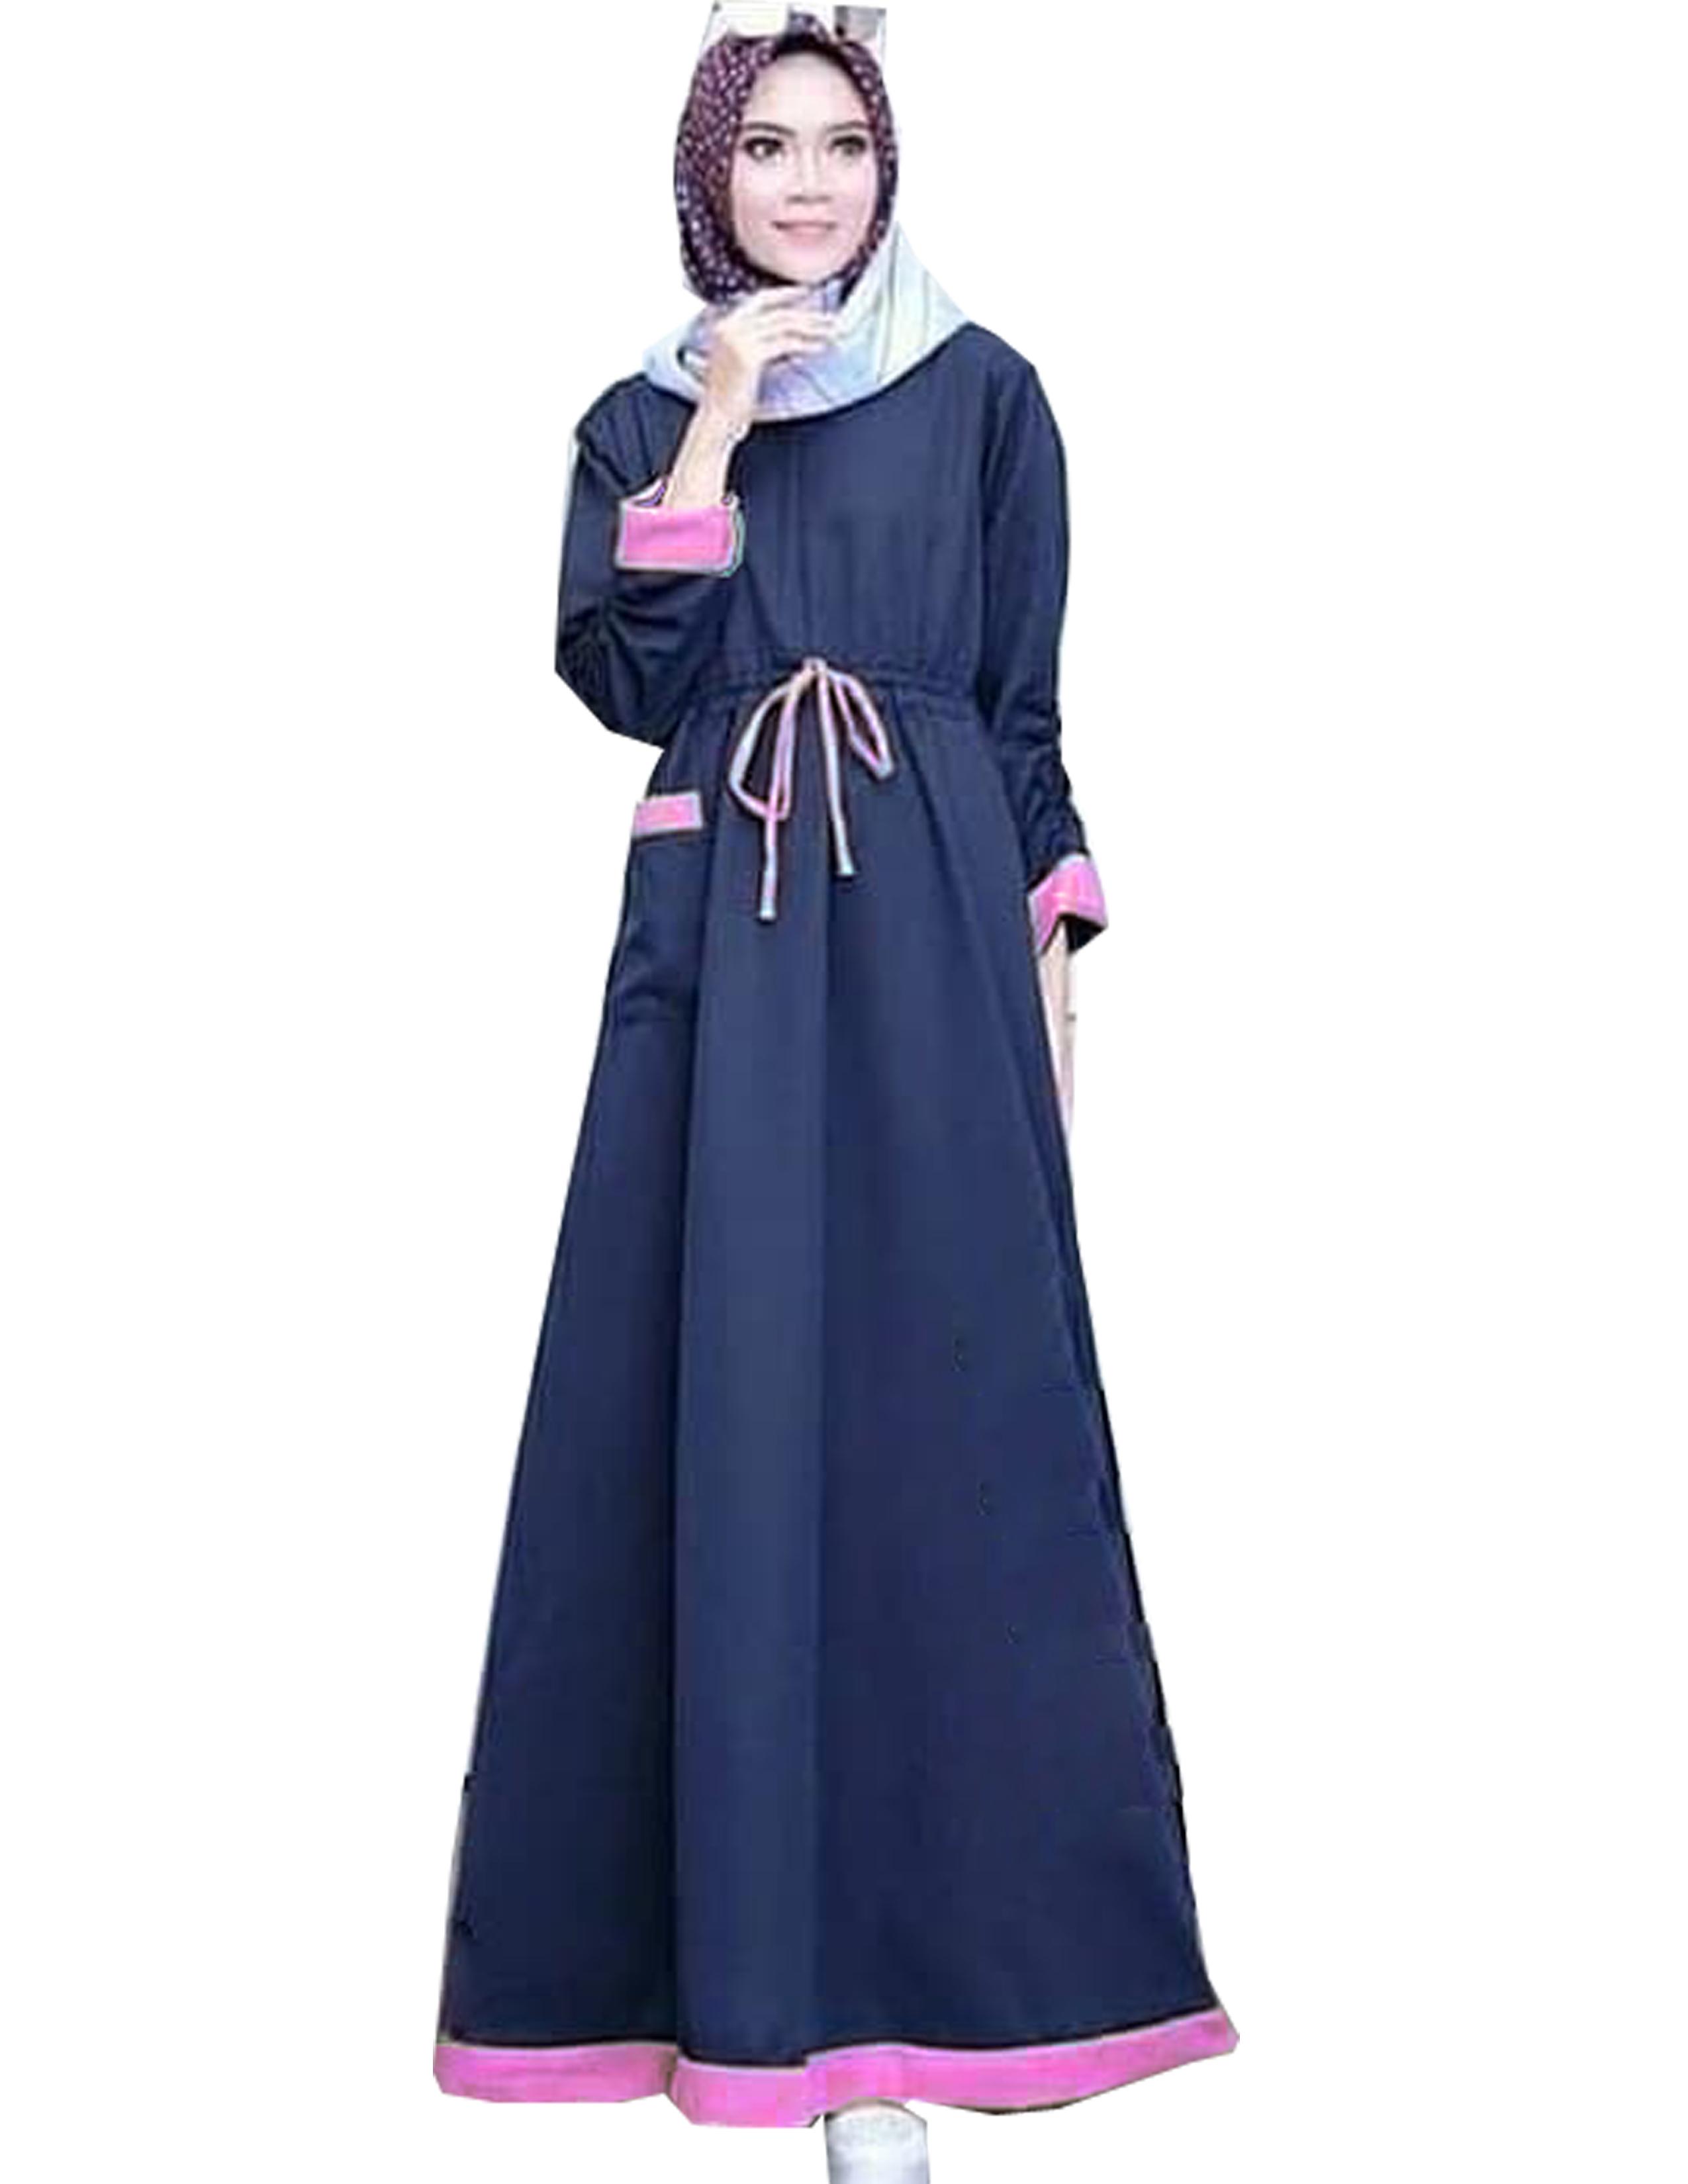 Baju Muslim Modern AUDREY MAXI Baahan BALOTELI GAMIS WANITA TERBARU 2020 Modern Remaja Gamis Wanita Murah Gamis Wanita Jumbo